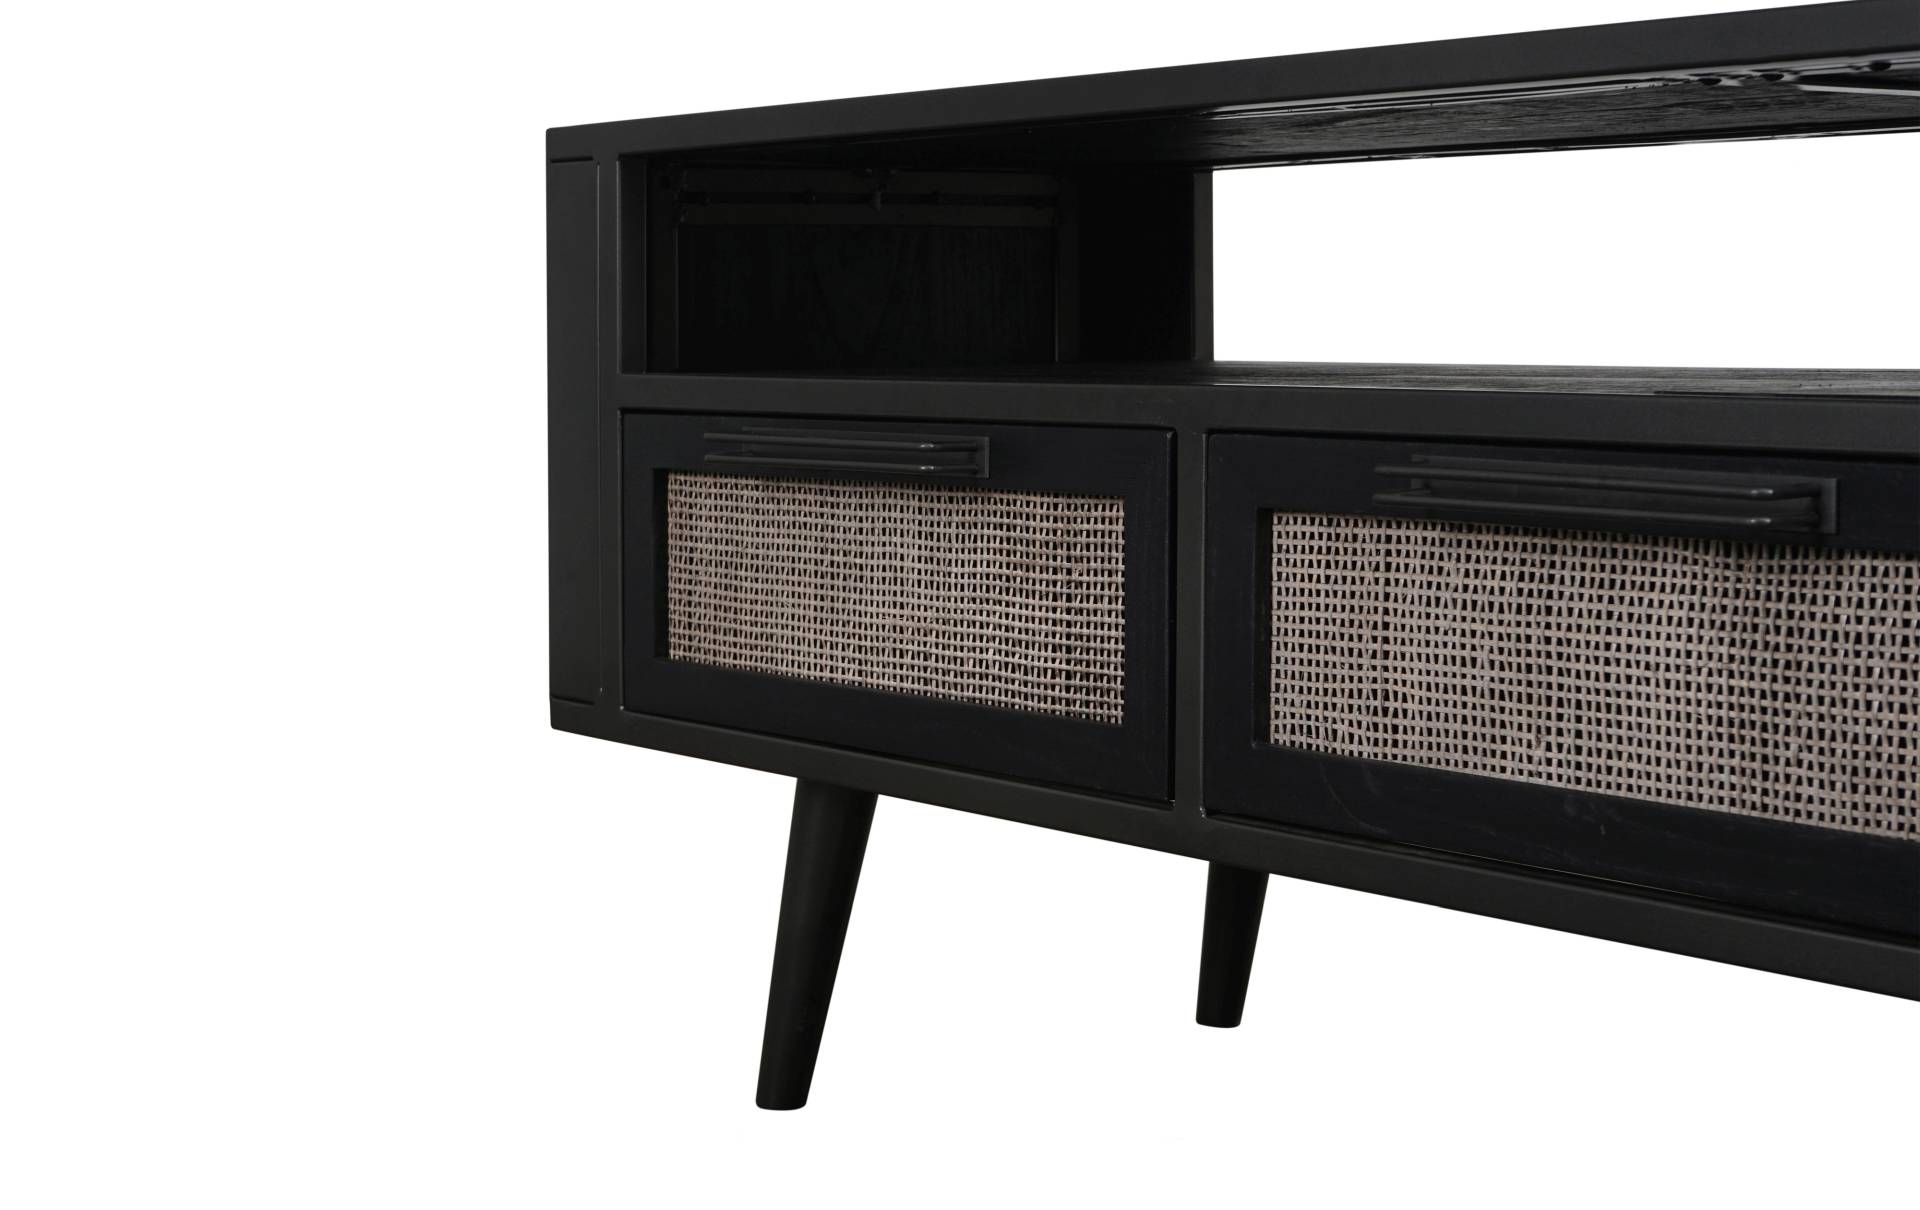 Das TV-Board Nordic Mindi Rattan überzeugt mit seinem Industriellen Design. Gefertigt wurde es aus Rattan und Mindi Holz, welches einen schwarzen Farbton besitzt. Das Gestell ist aus Metall und hat eine schwarze Farbe. Das TV-Board verfügt über drei Schub